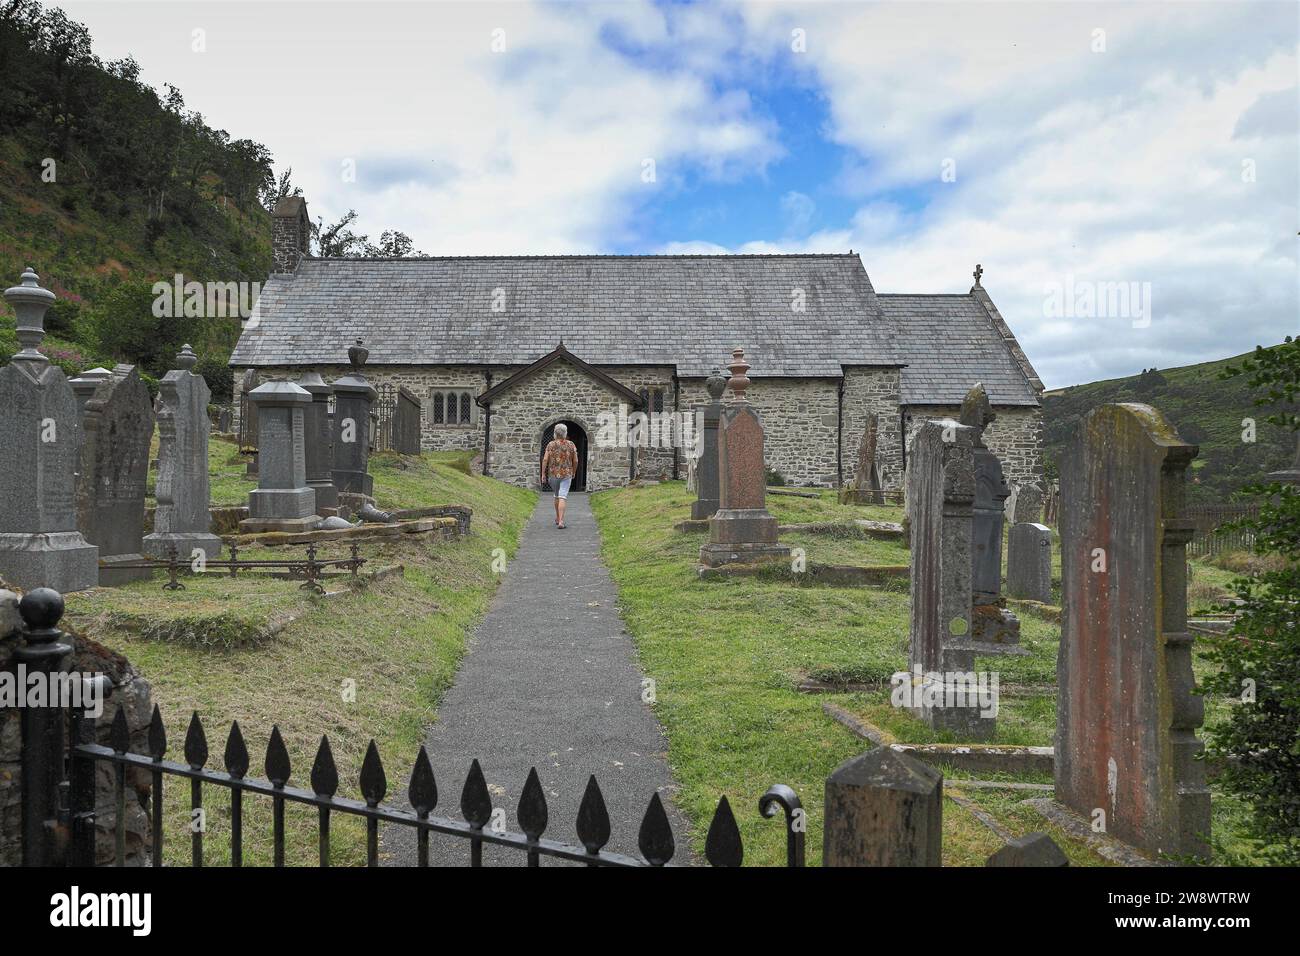 Femme marchant à travers le cimetière vers le porche d'entrée de St Davids Old Church, Llanwrtyd Wells, Powys, pays de Galles, Royaume-Uni Banque D'Images